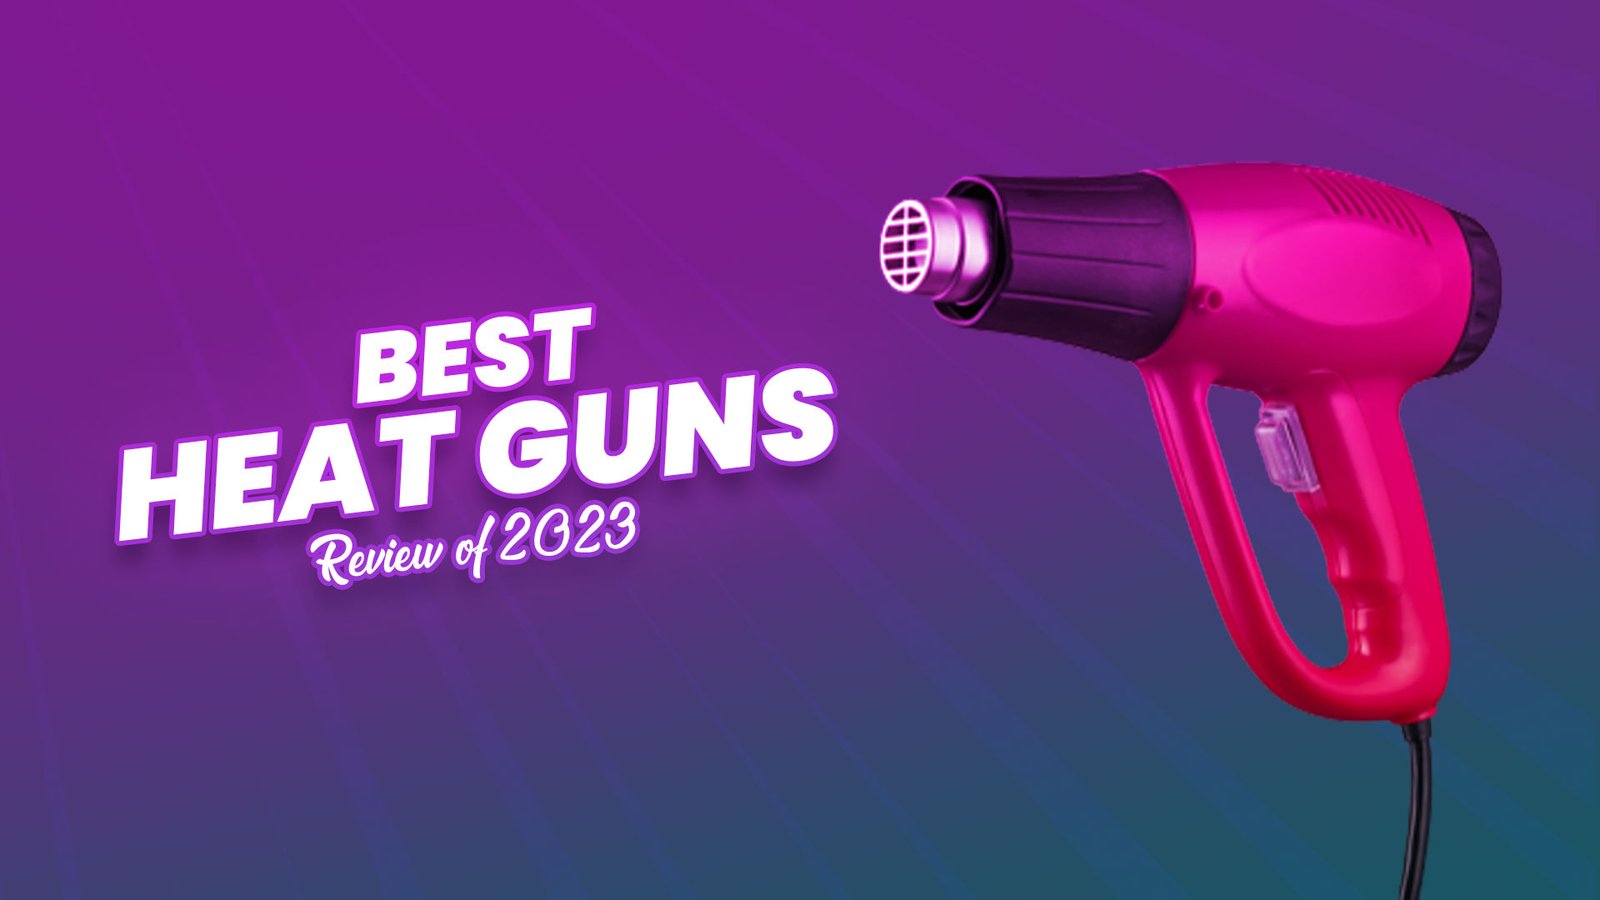 Best Heat Guns Review of 2023